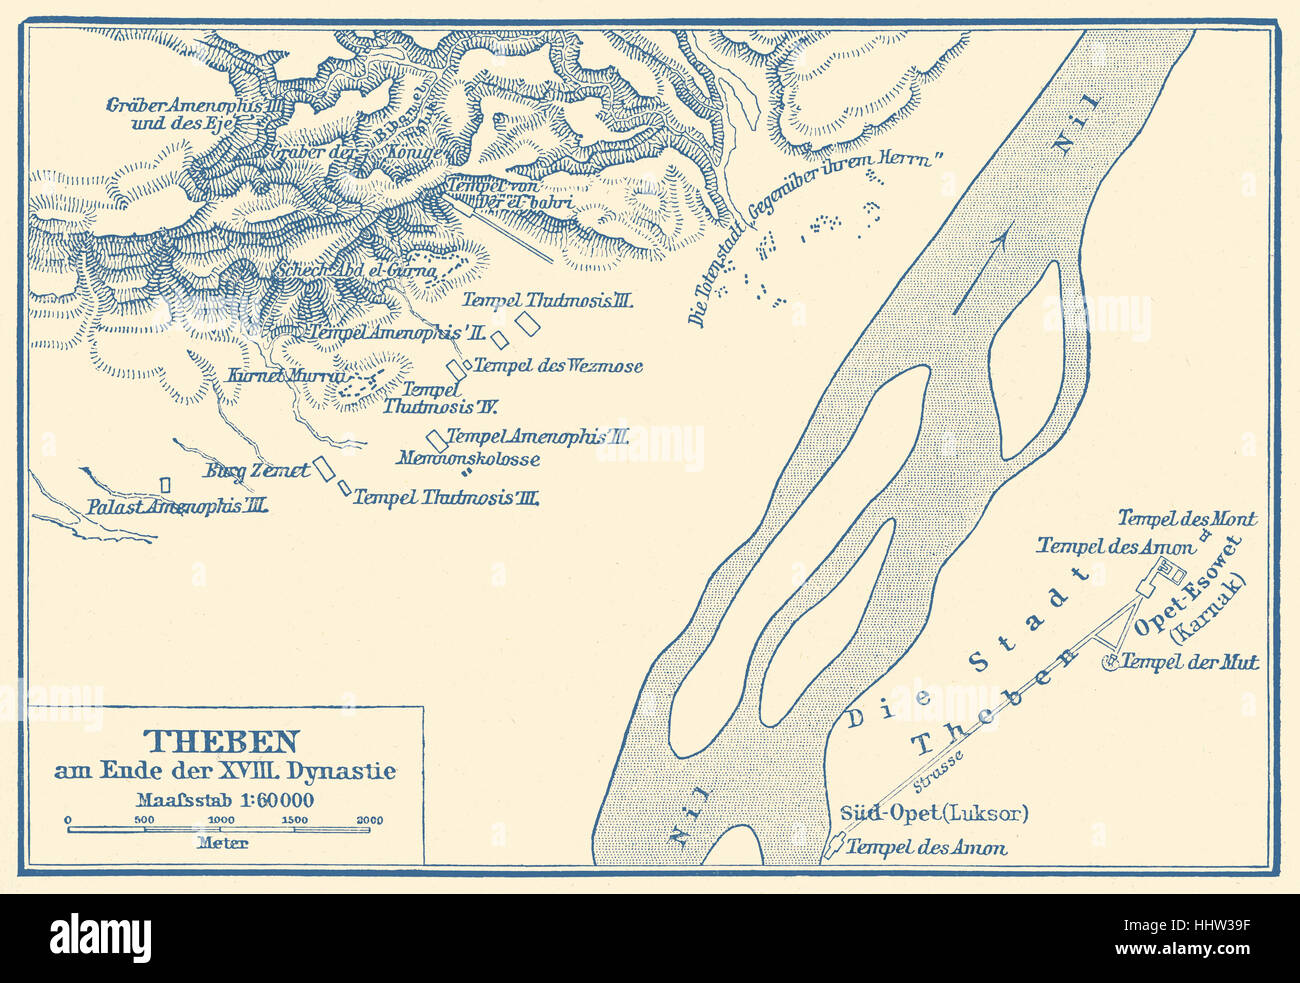 Mappa di Tebe alla fine del XVIII dinastia. Tomba di Nakht. Nakht - scriba che terrà il titolo "astronomo di Amon' o Foto Stock